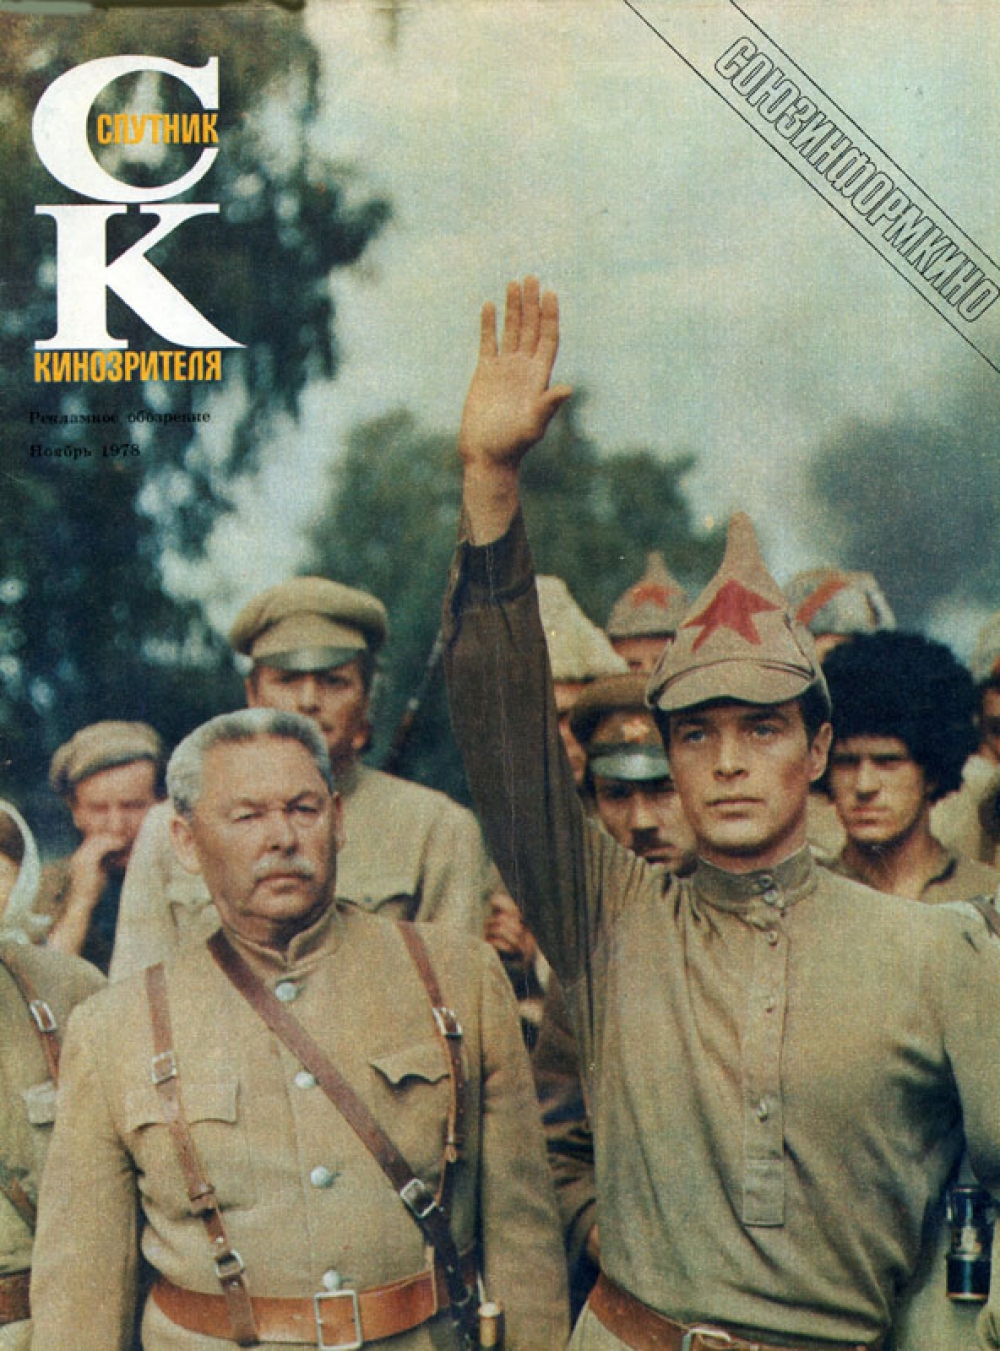 Самый популярный журнал о кино в СССР.